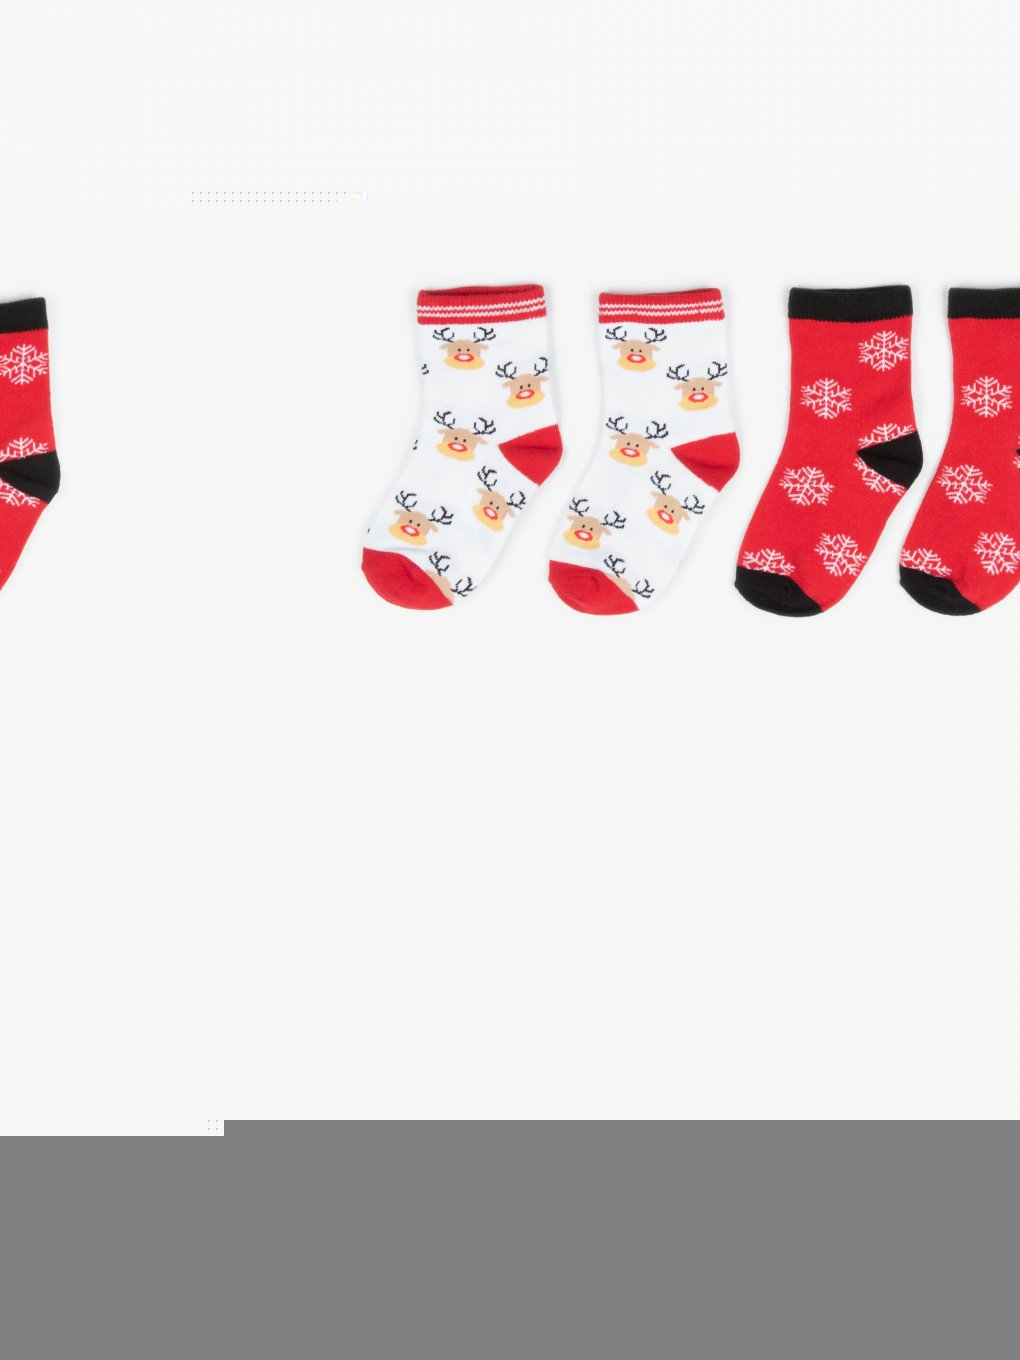 2 páry vánočních ponožek s vánočním motivem